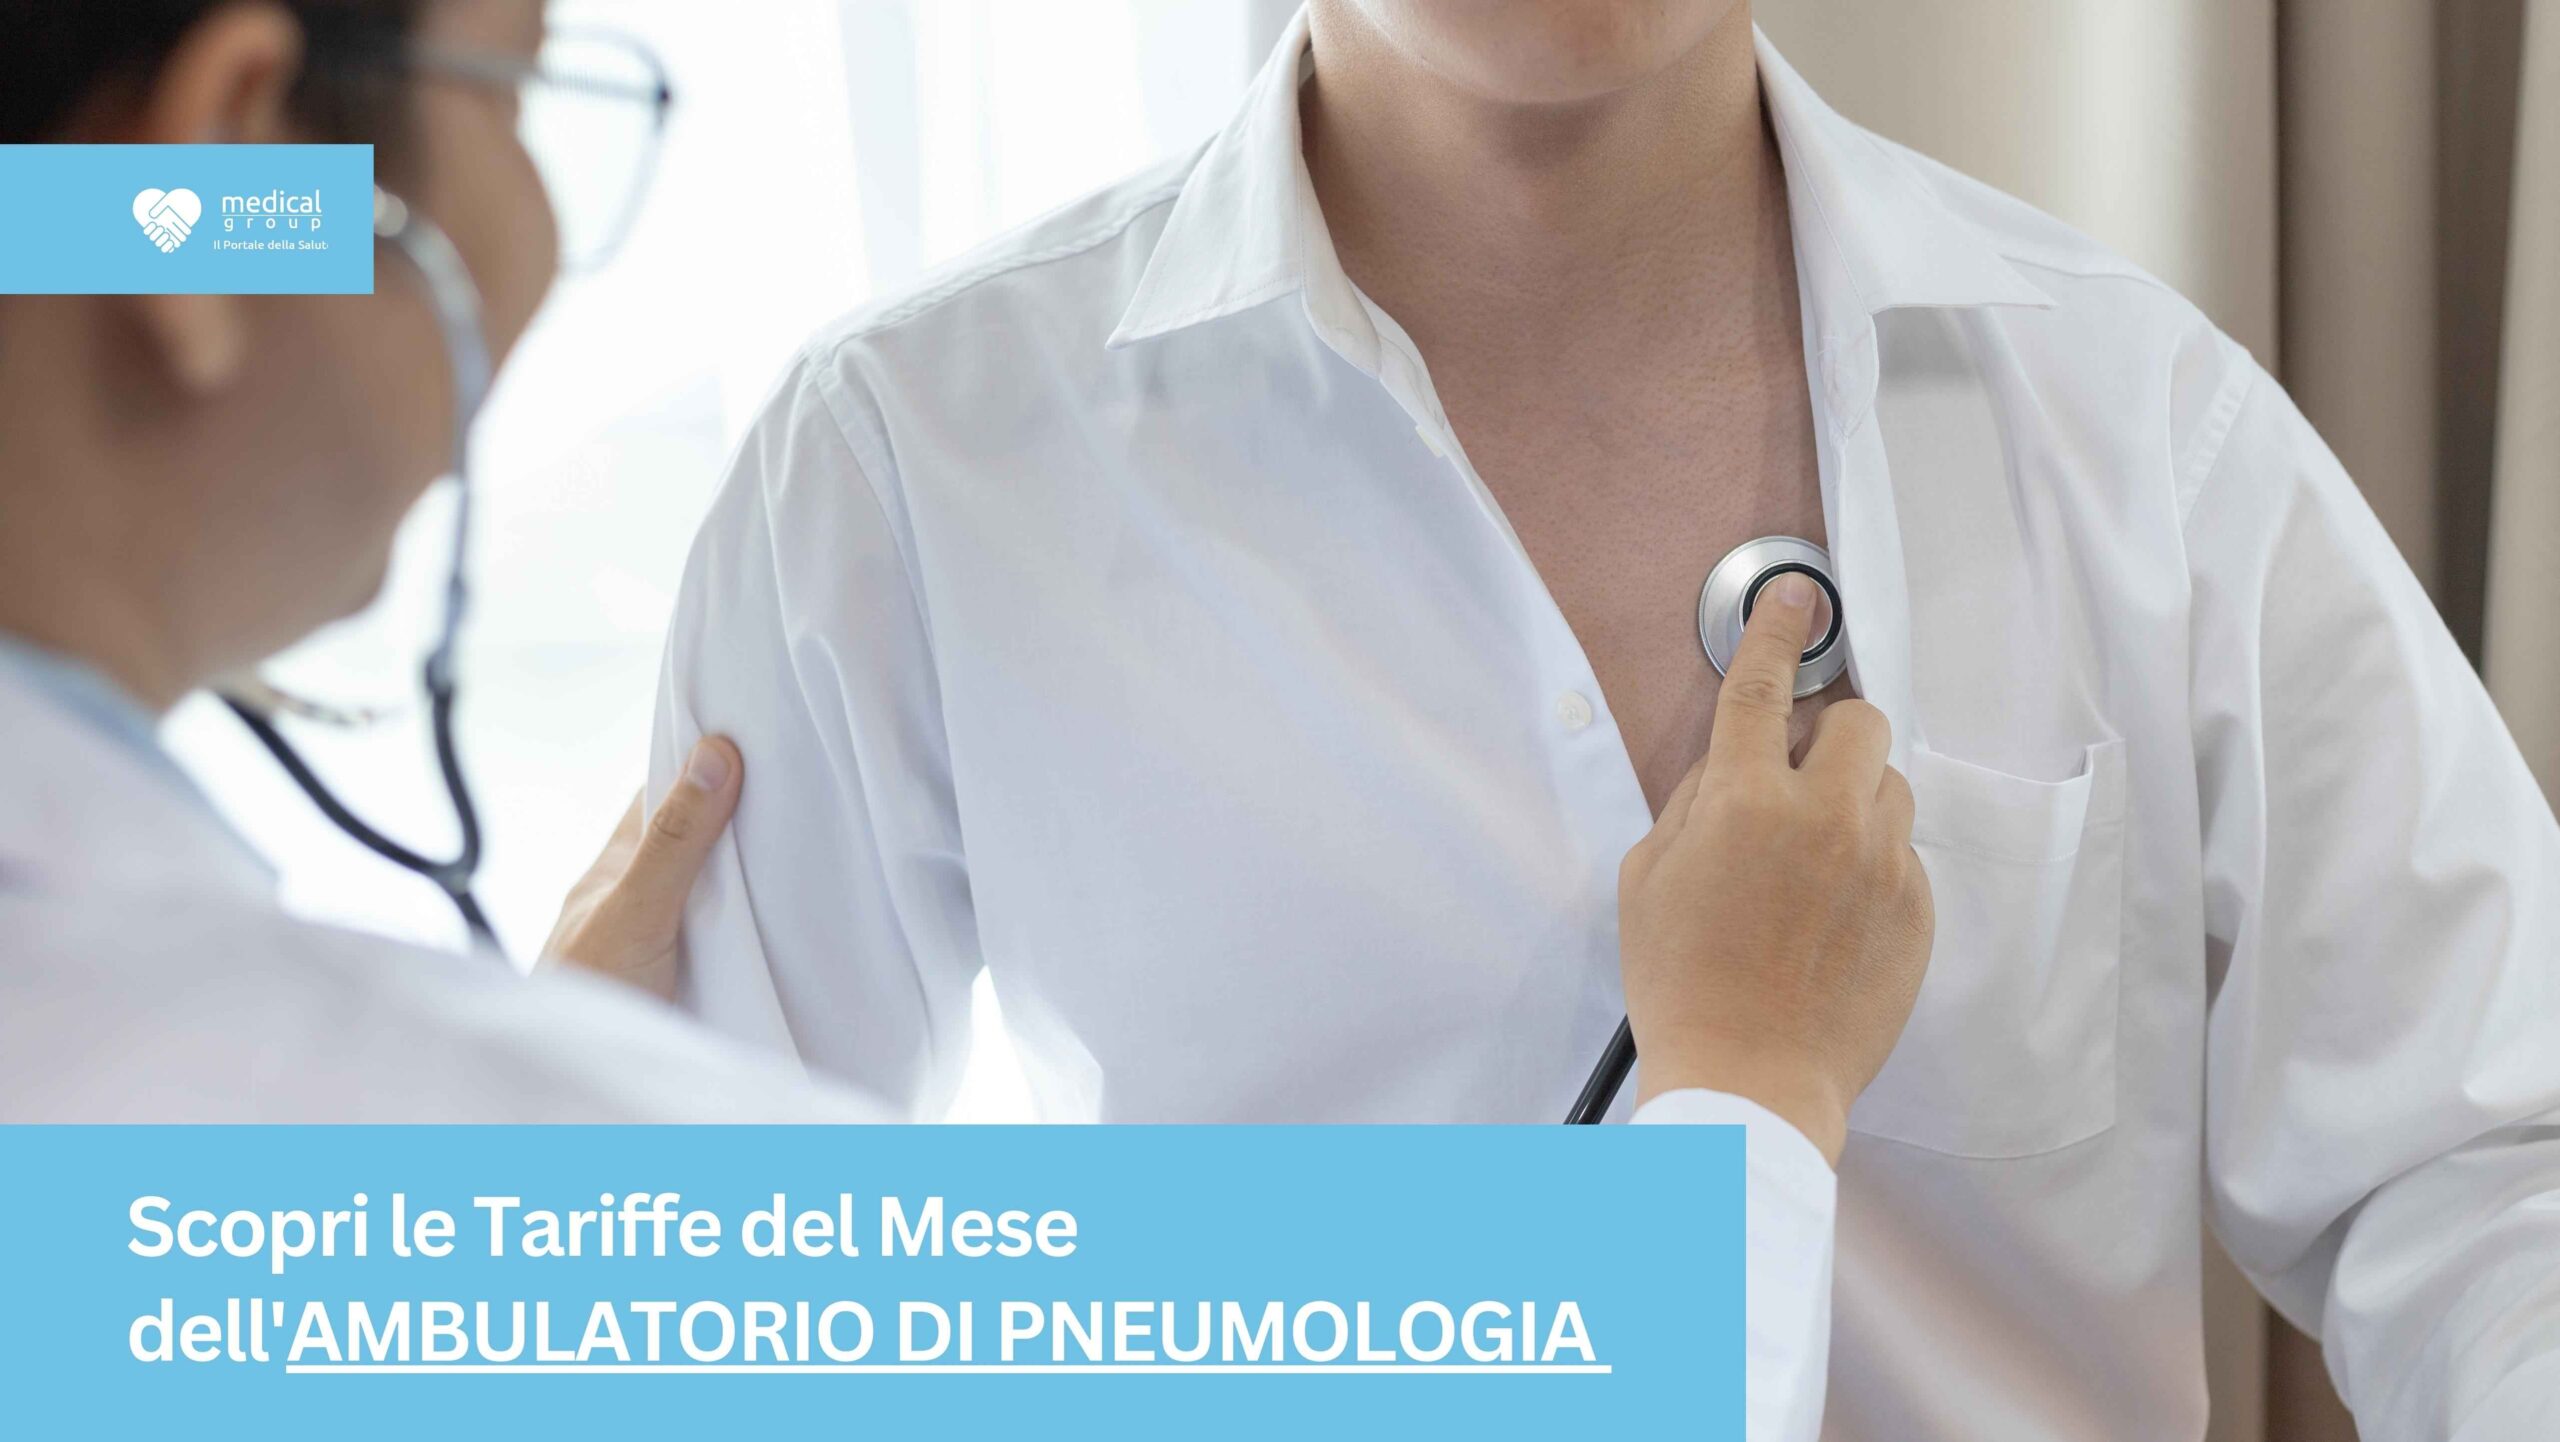 Tariffe del Mese Poliambulatorio Pneumologia F-Medical Frosinone